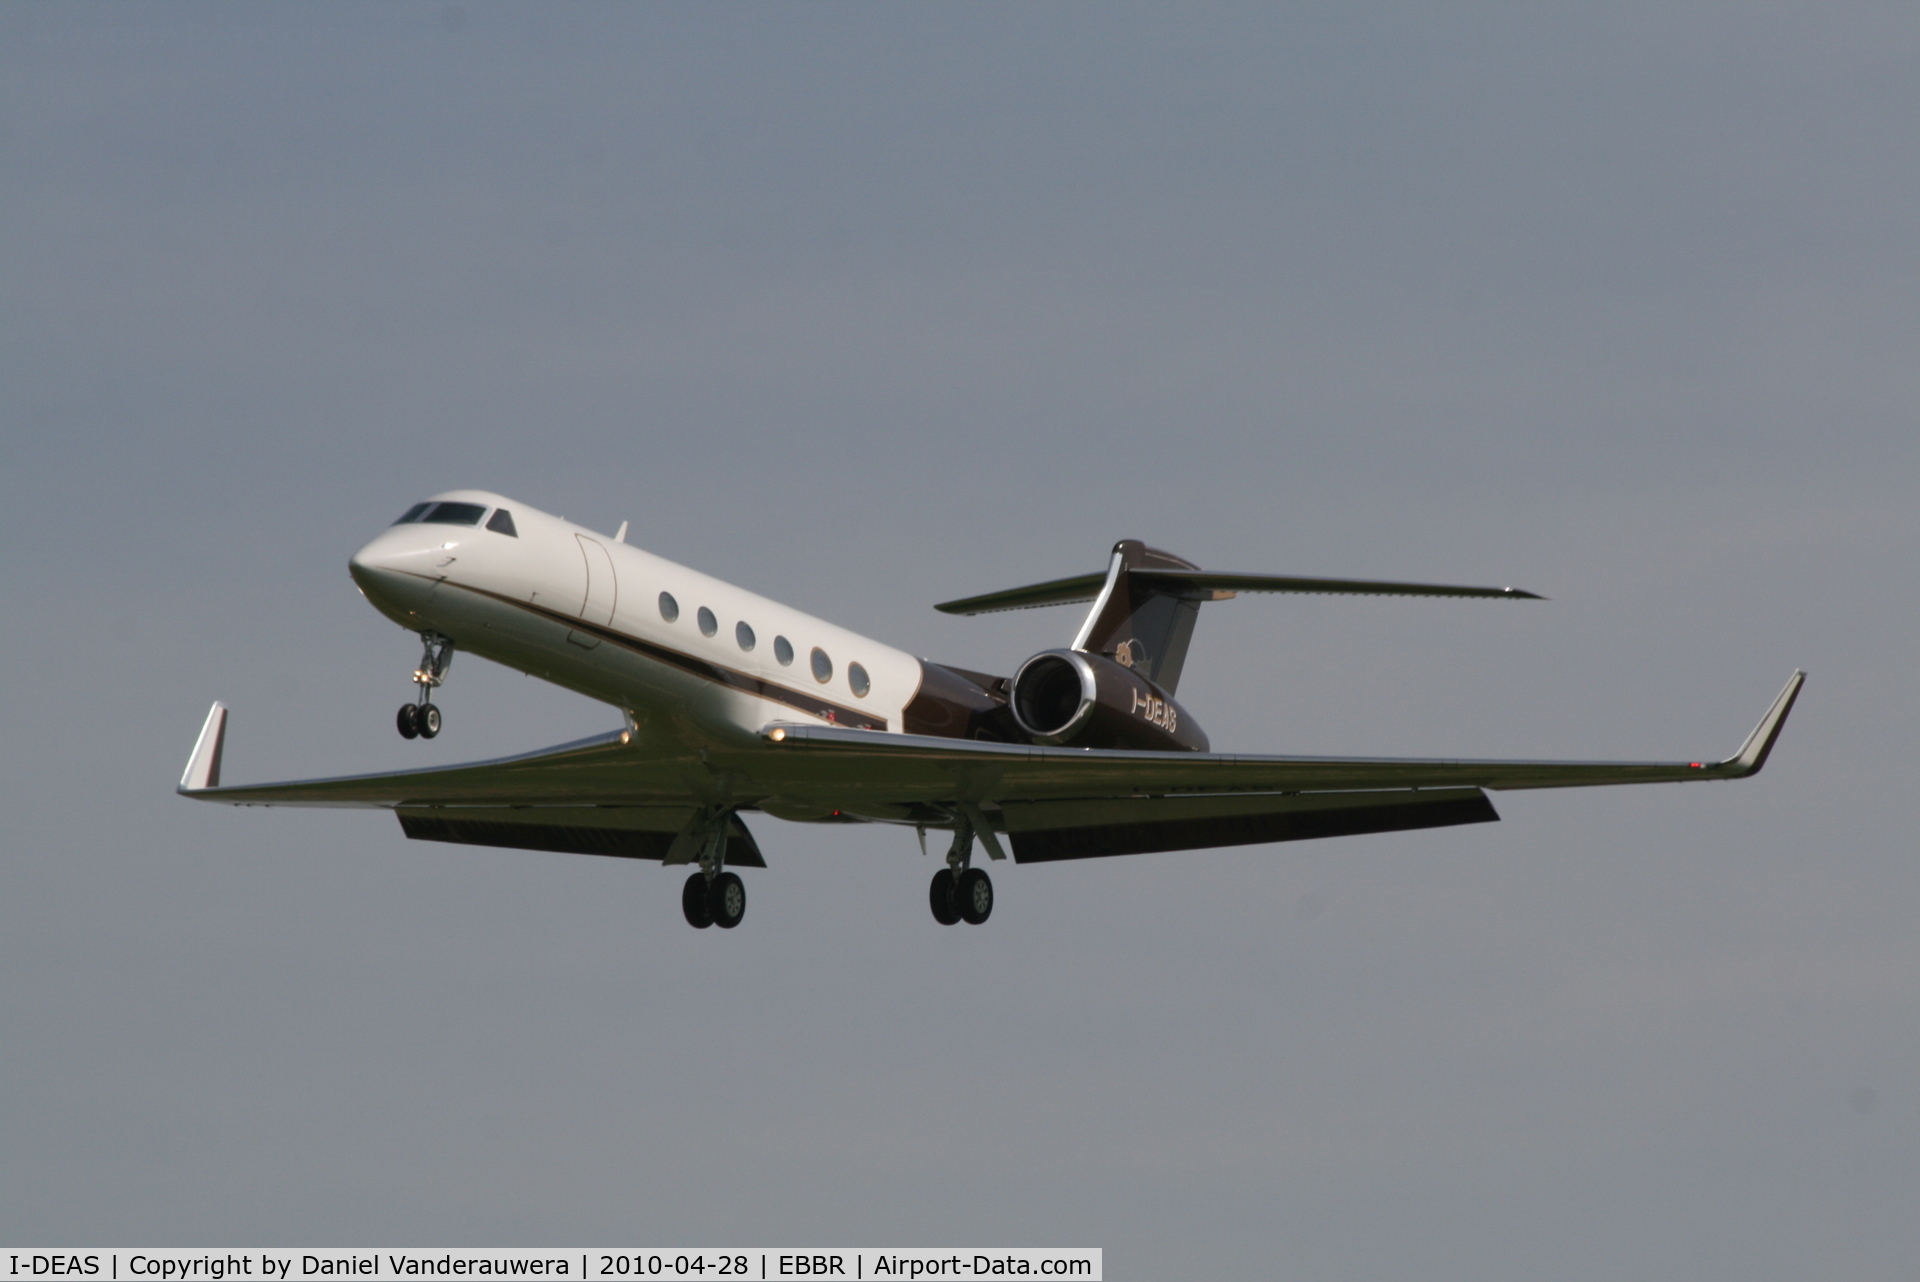 I-DEAS, 2000 Gulfstream Aerospace G-V C/N 593, Arrival to RWY 25L